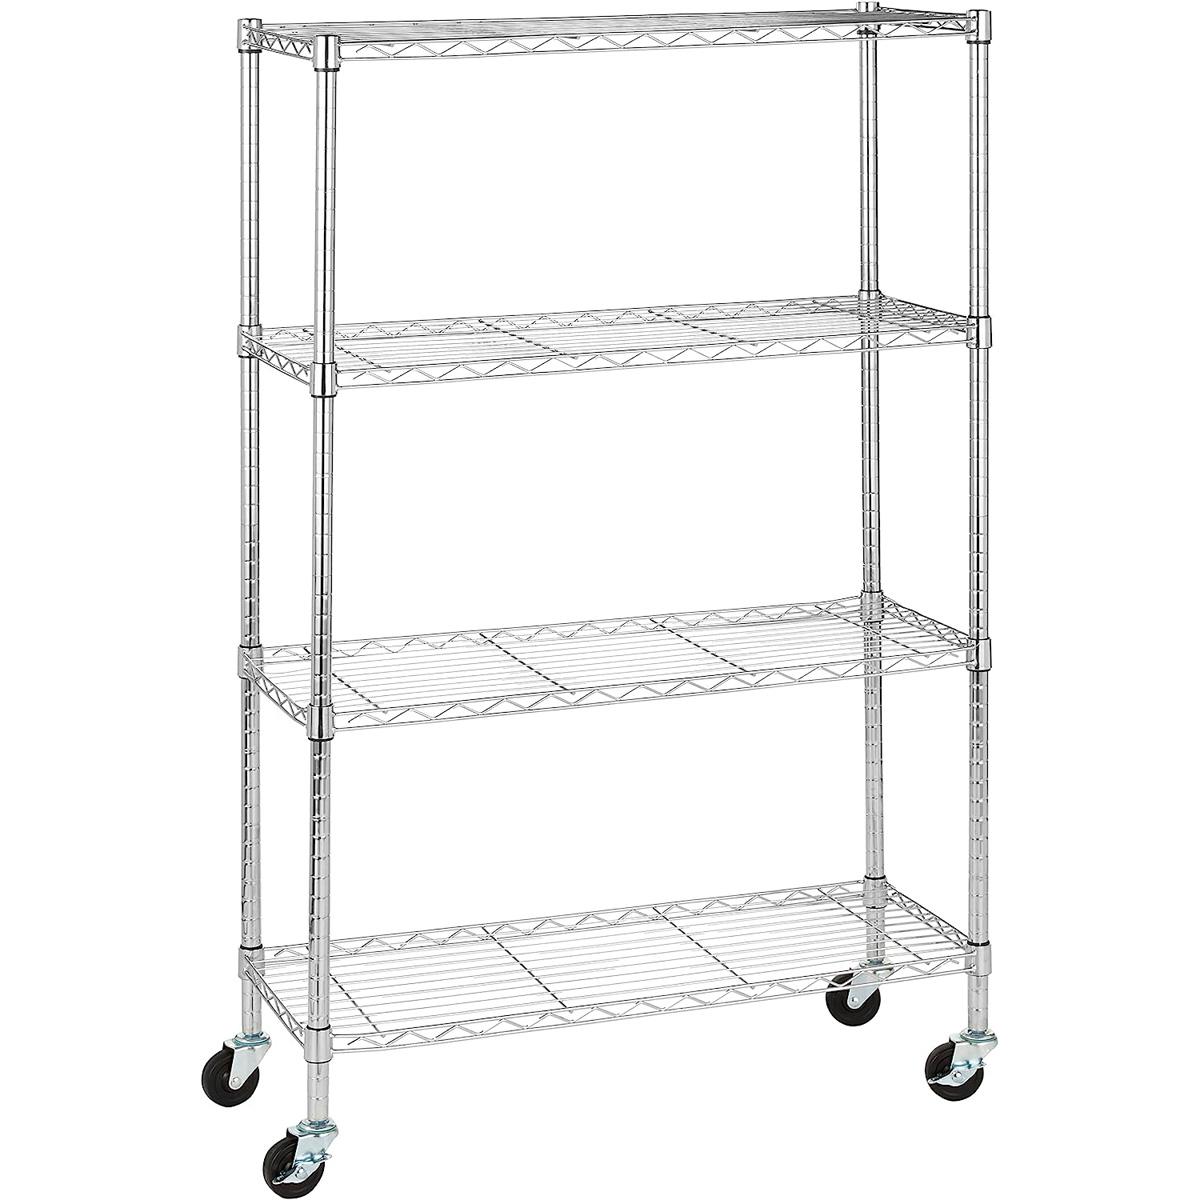 Amazon Basics Adjustable Heavy Duty Storage 4-Shelf Shelving Unit for $53.80 Shipped